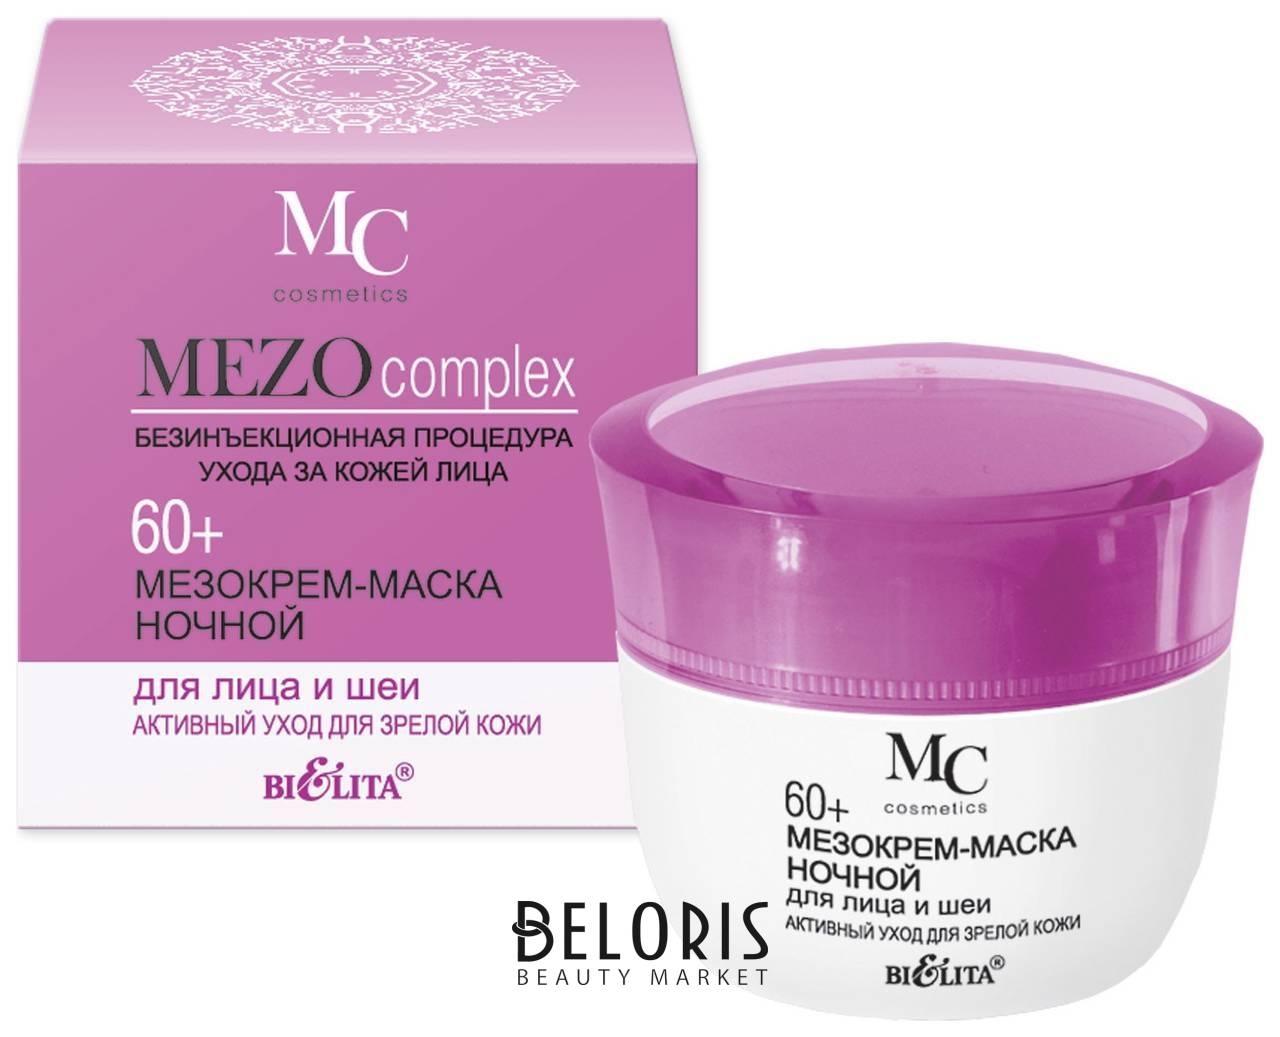 Мезокрем-маска для лица и шеи ночной Активный уход для зрелой кожи Mezocomplex 60+ Белита - Витекс MEZOcomplex